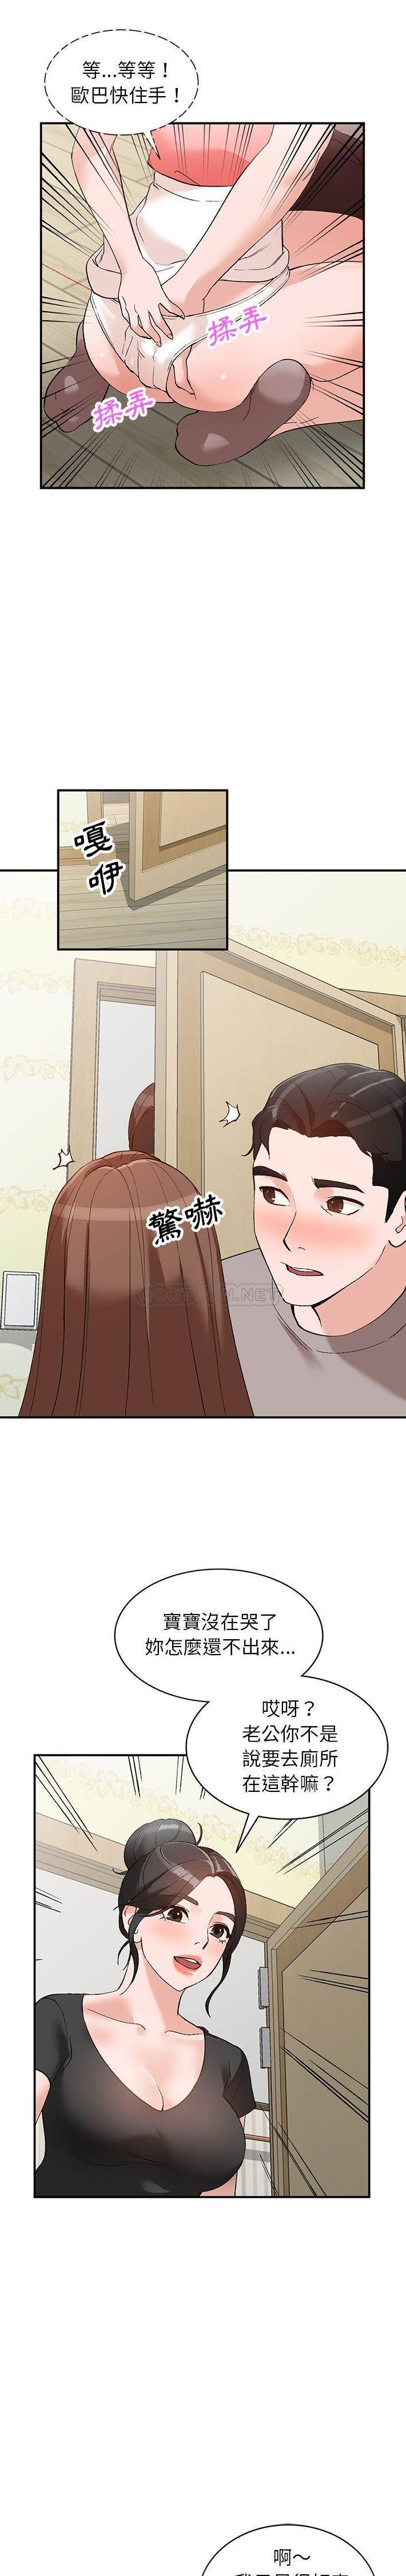 韩国污漫画 她們的小秘密(小鎮上的女人們) 第14话 9